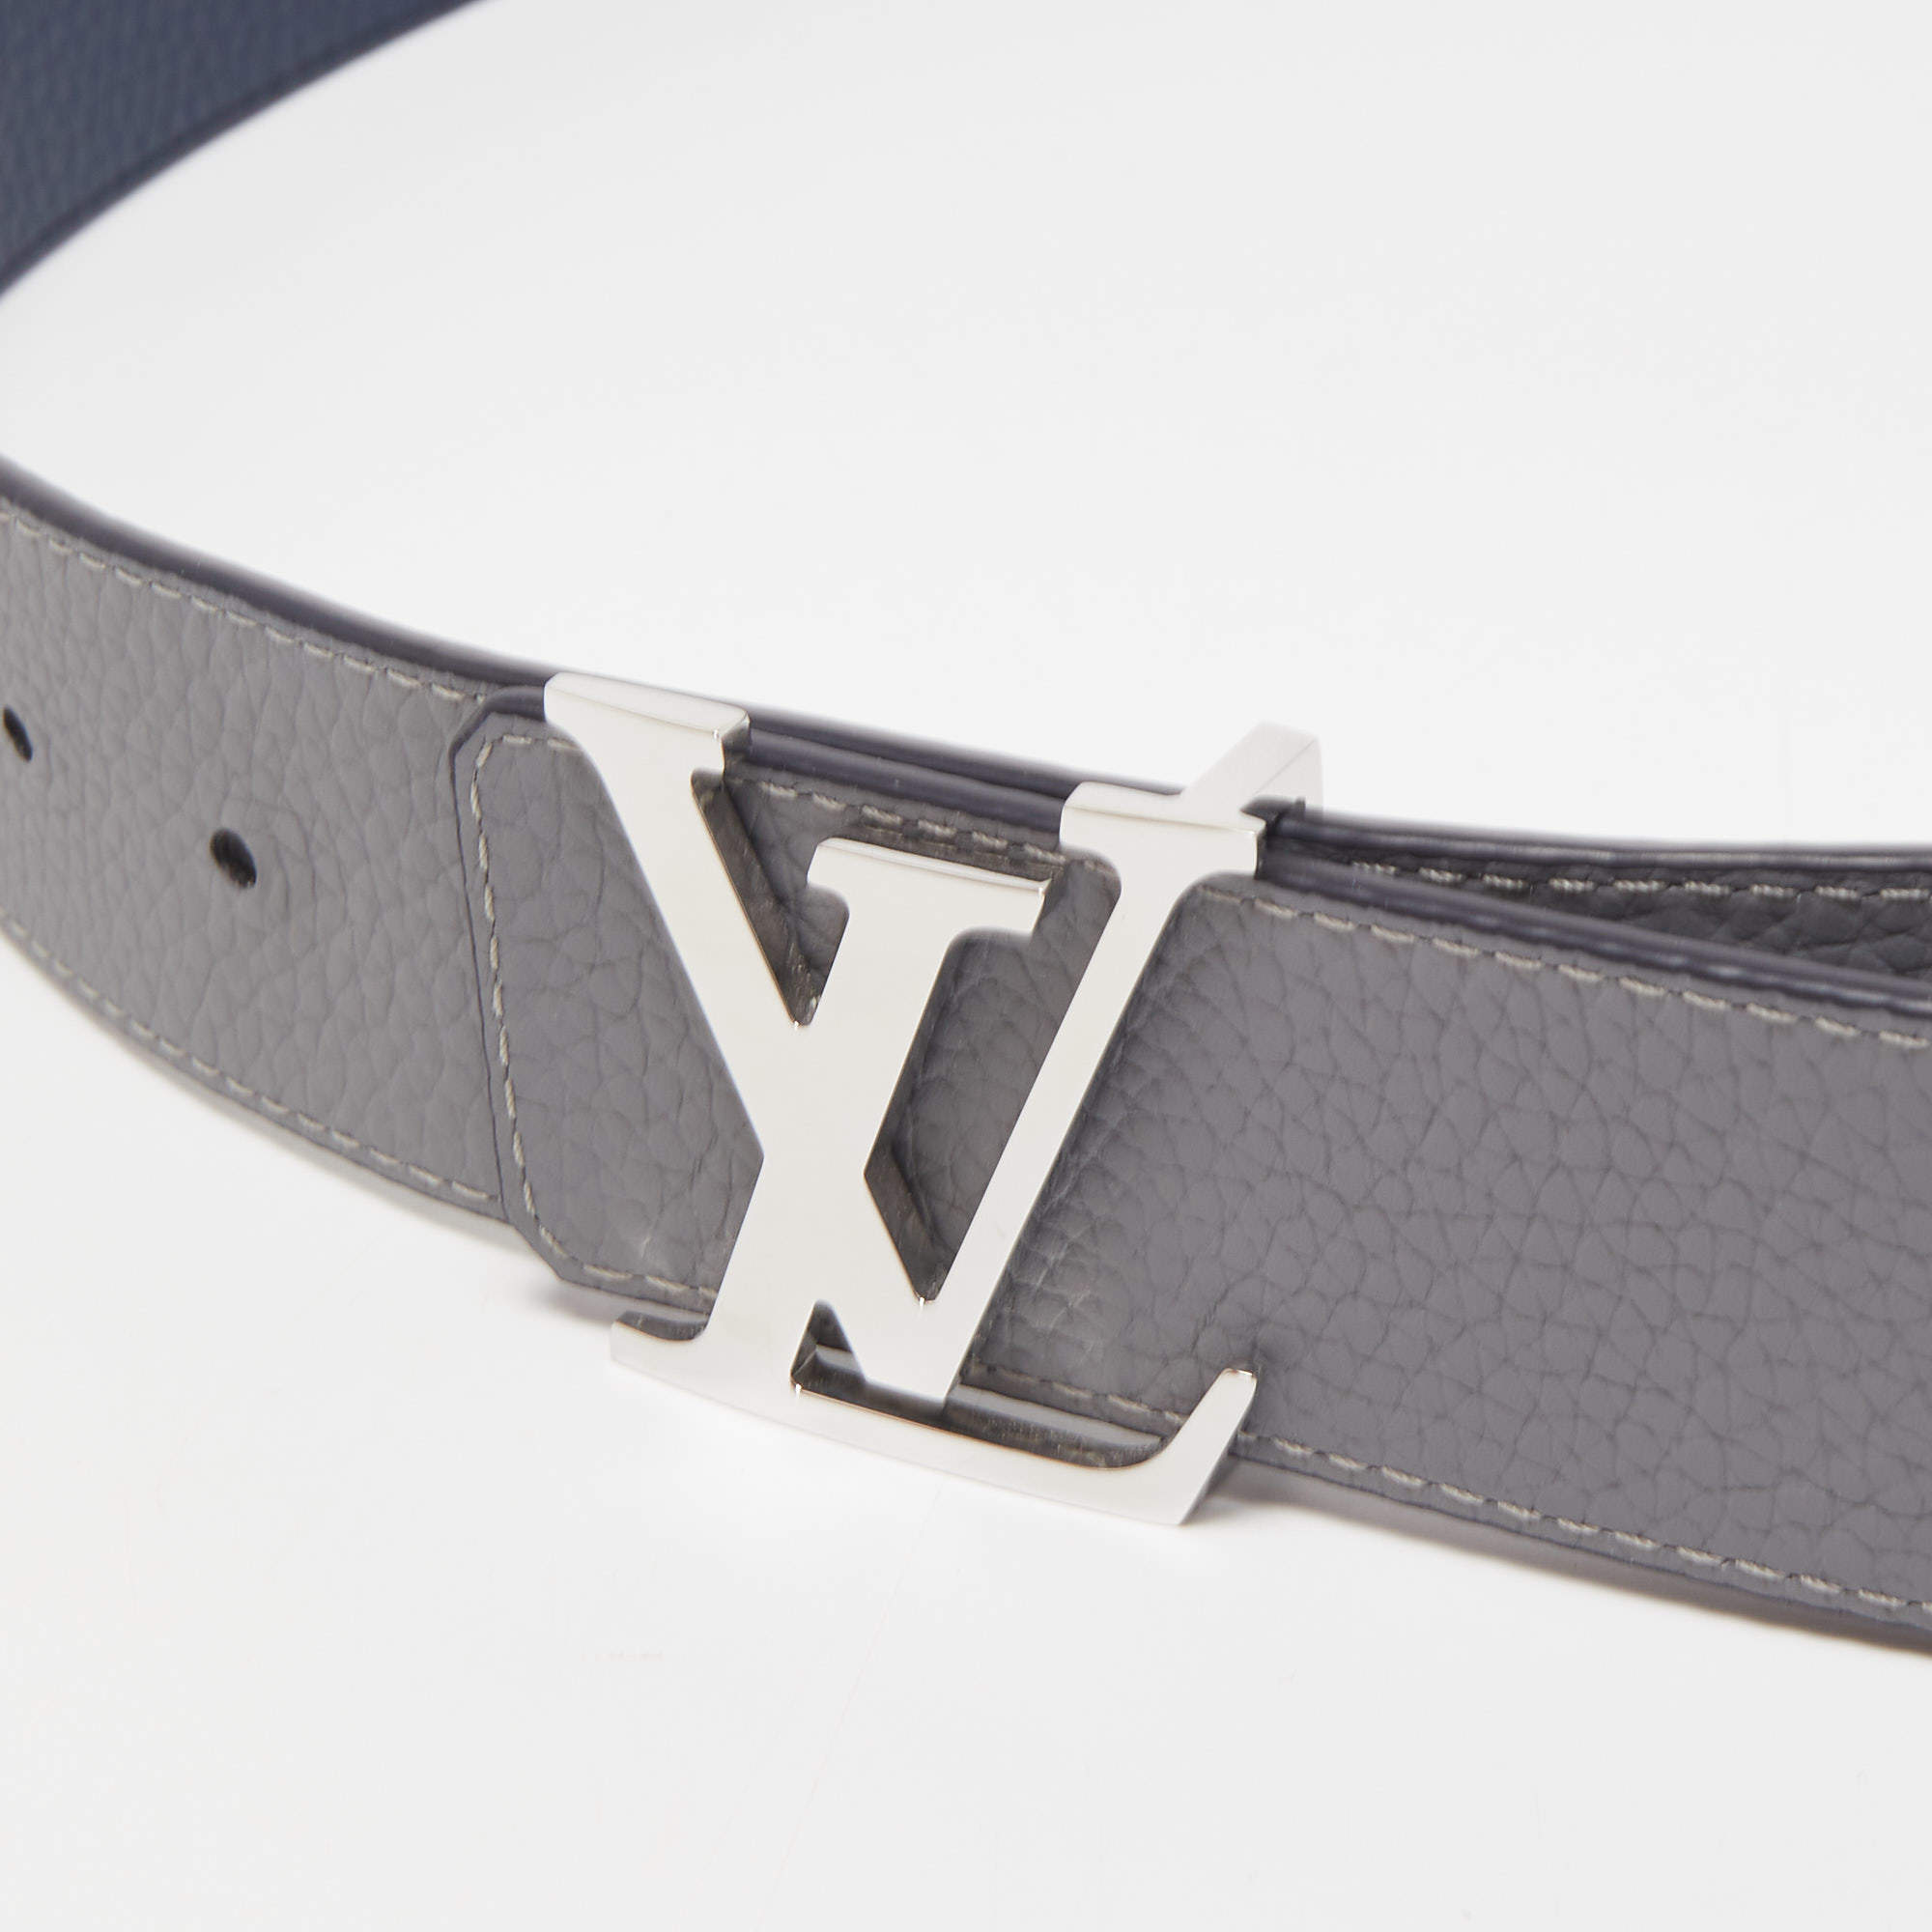 Louis Vuitton Mens Belts 2023-24FW, Blue, 95